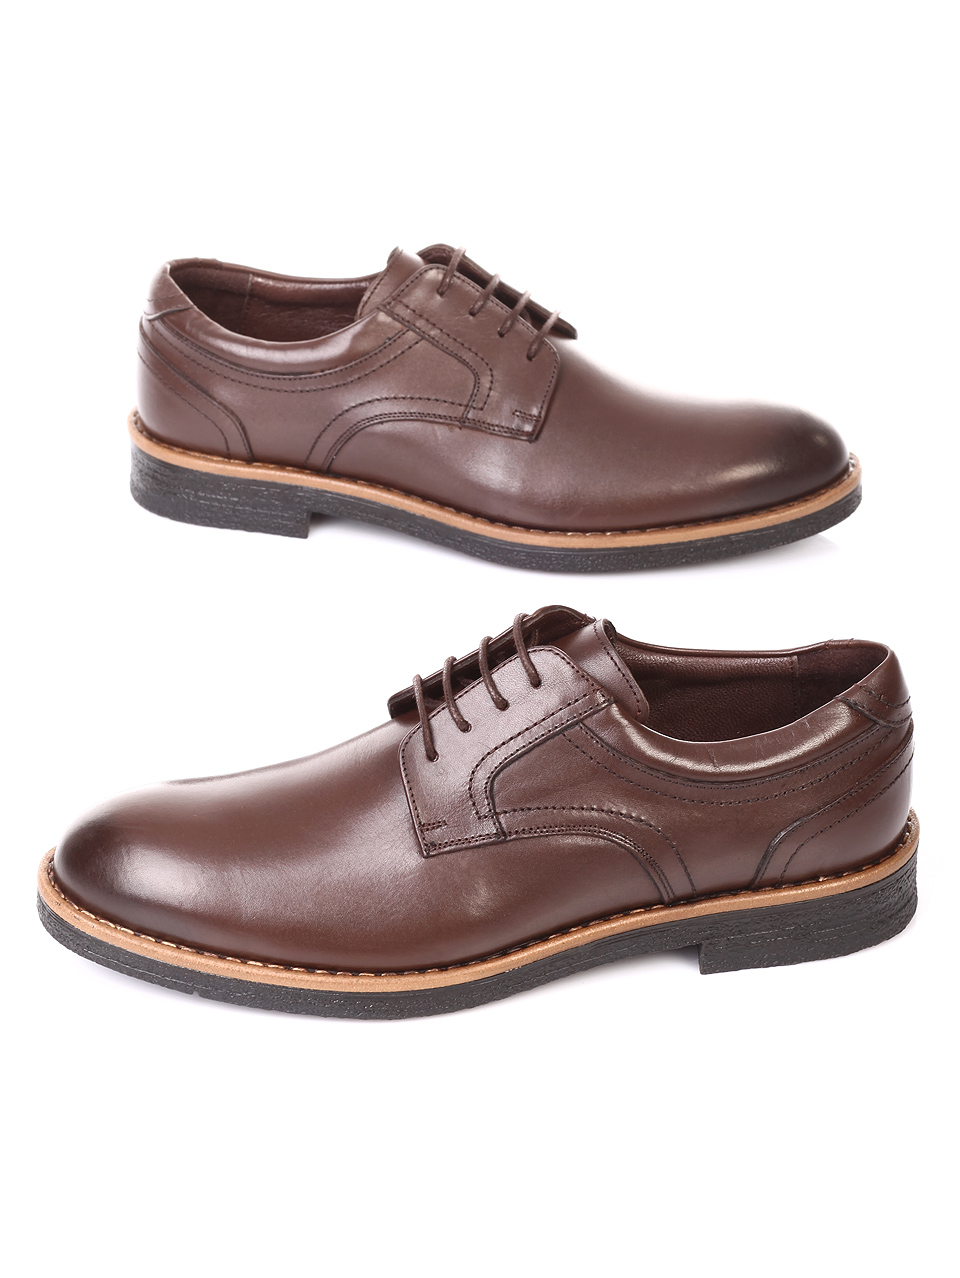 Елегантни мъжки обувки от естествена кожа 7AT-181122 brown